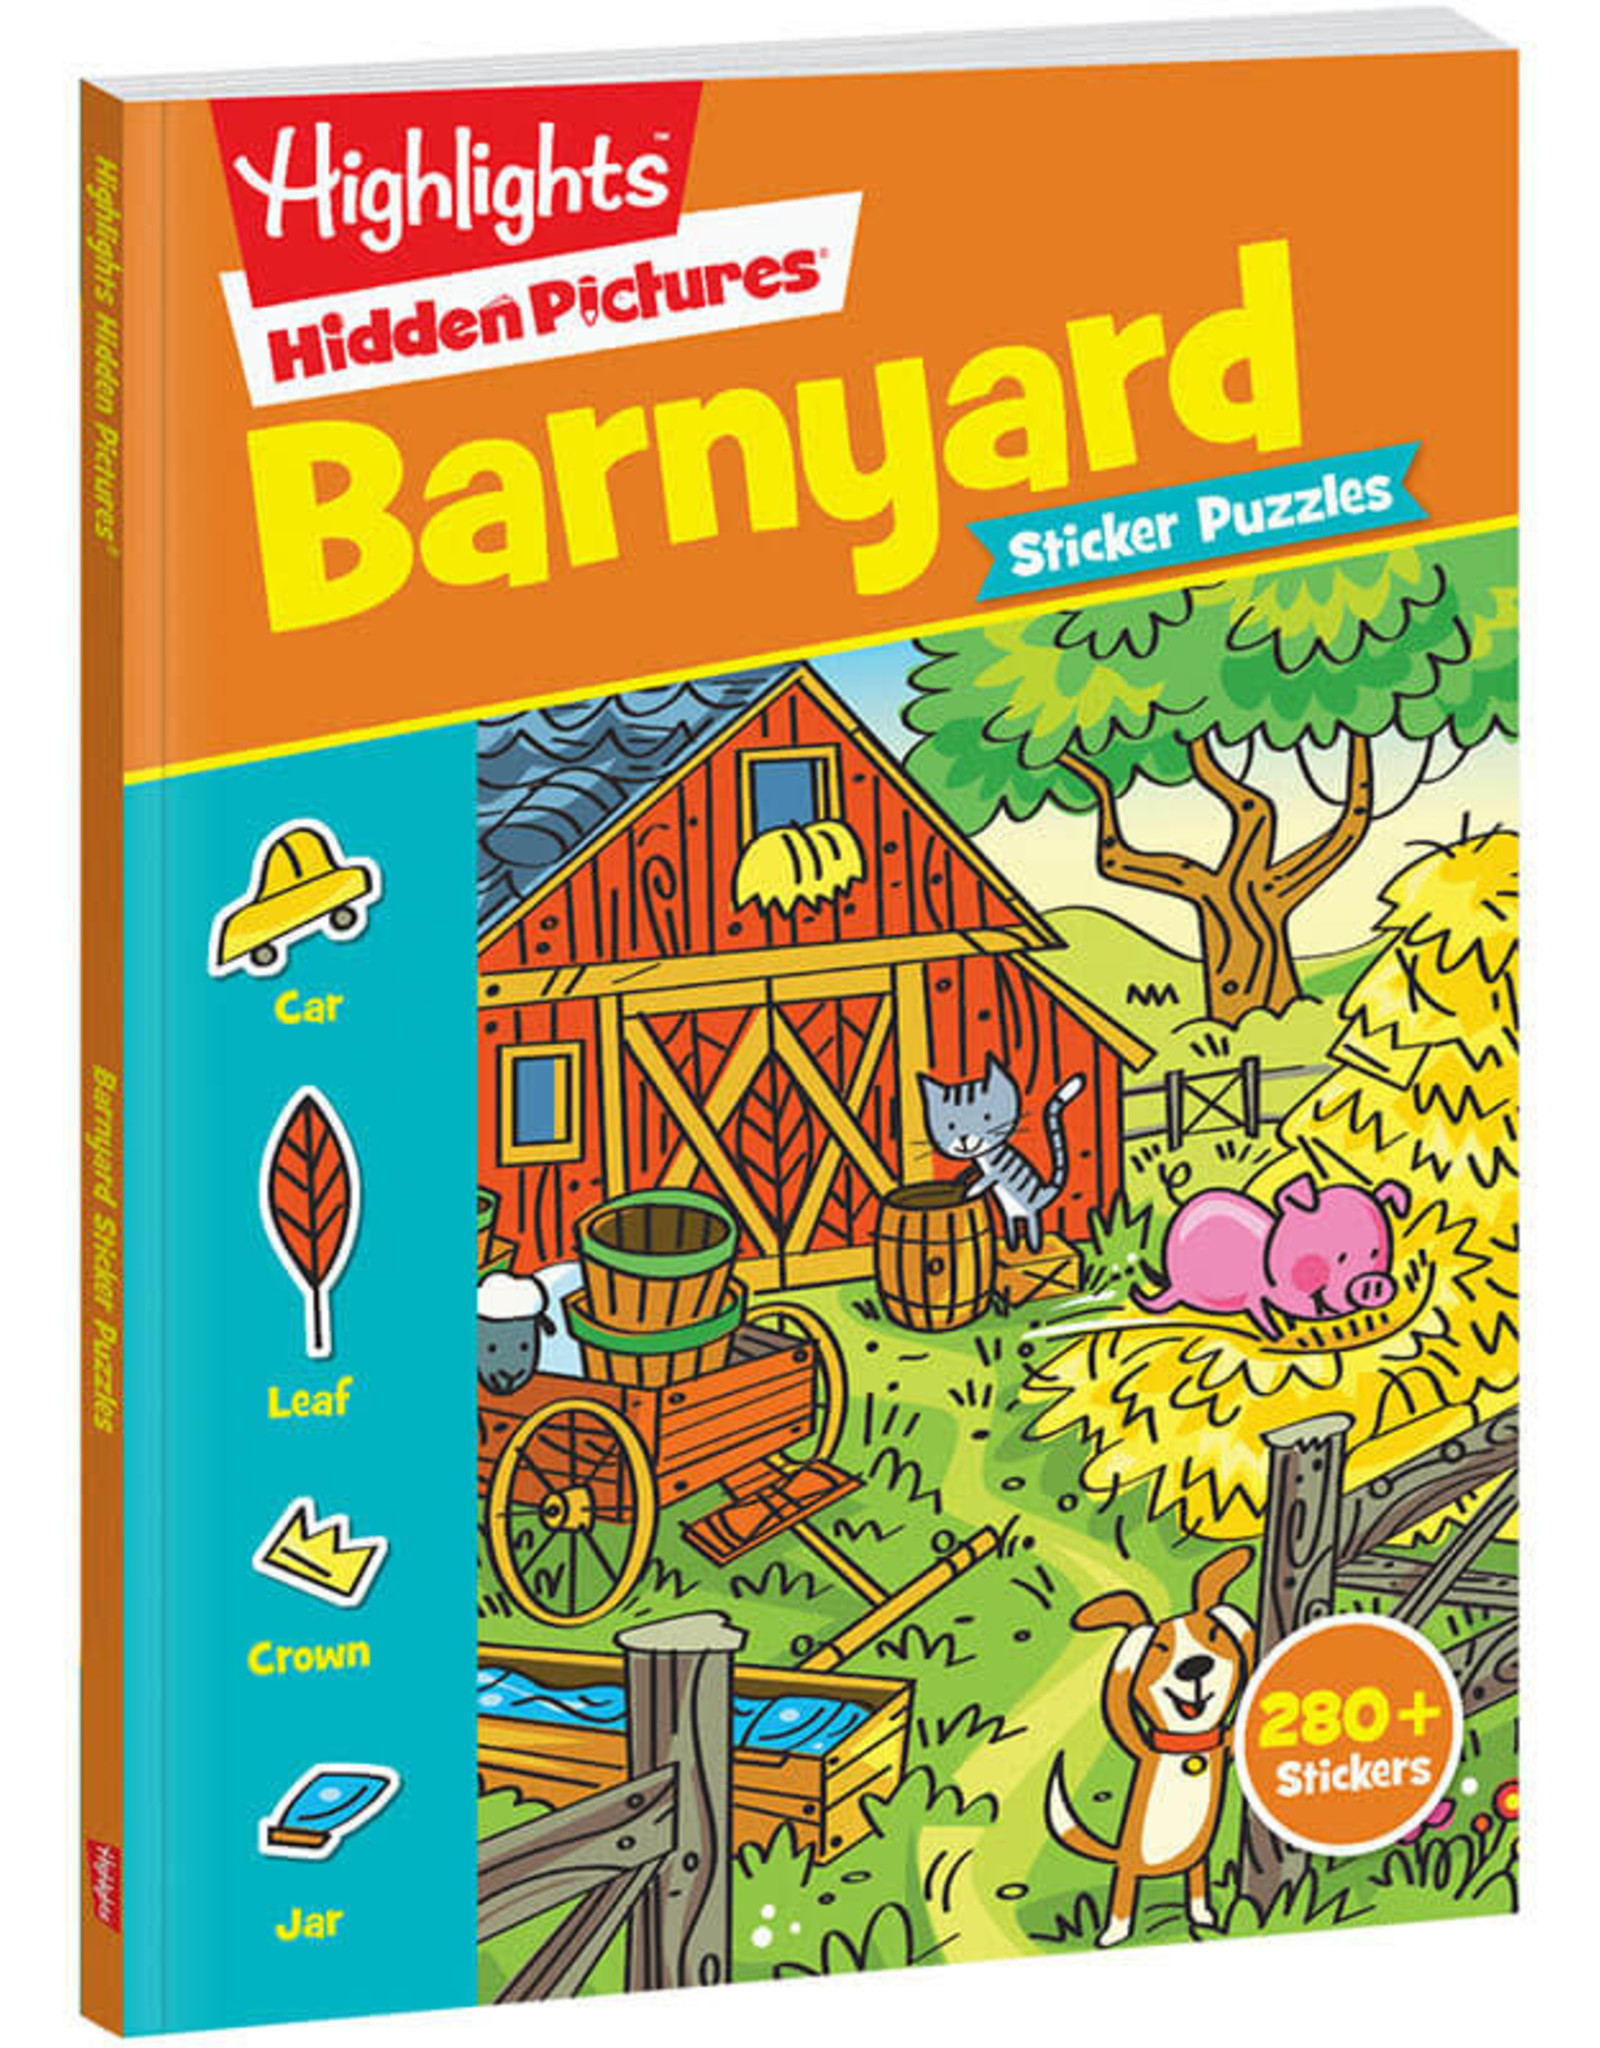 Hidden Pictures (Barnyard Sticker Puzzles)